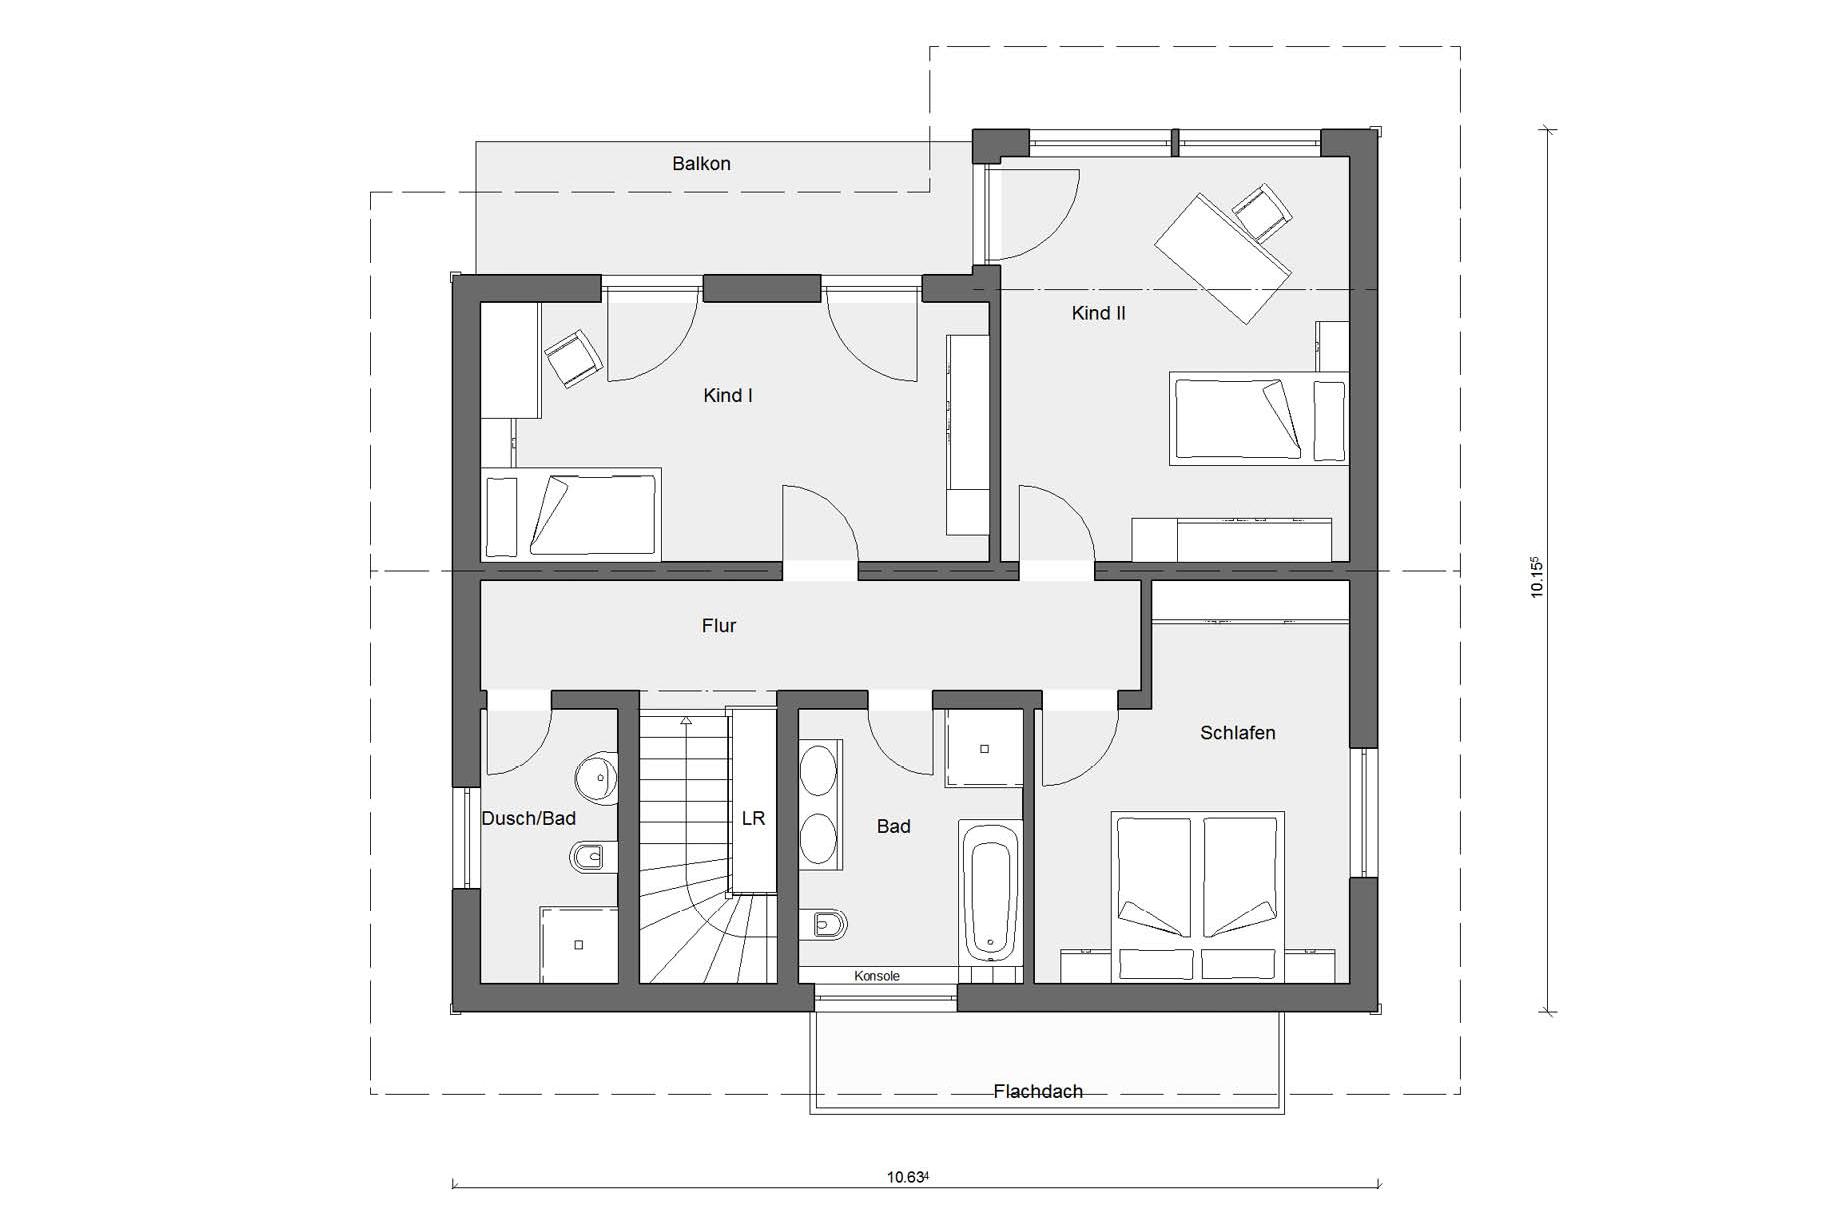 Attic floor plan Prefabricated house with wooden facade E 20-159.1